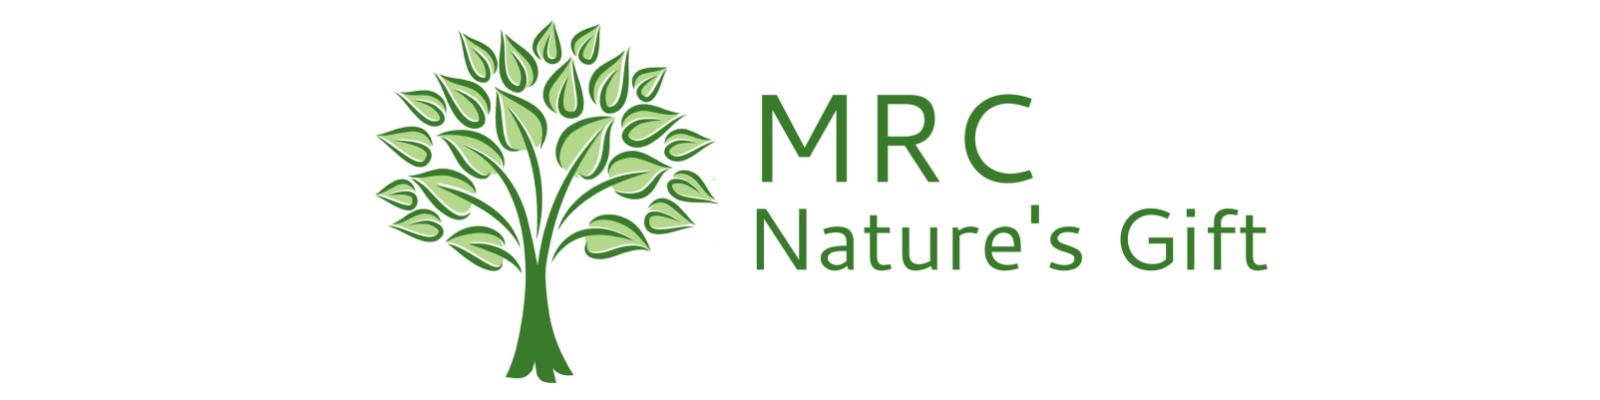 MRC Nature's Gift